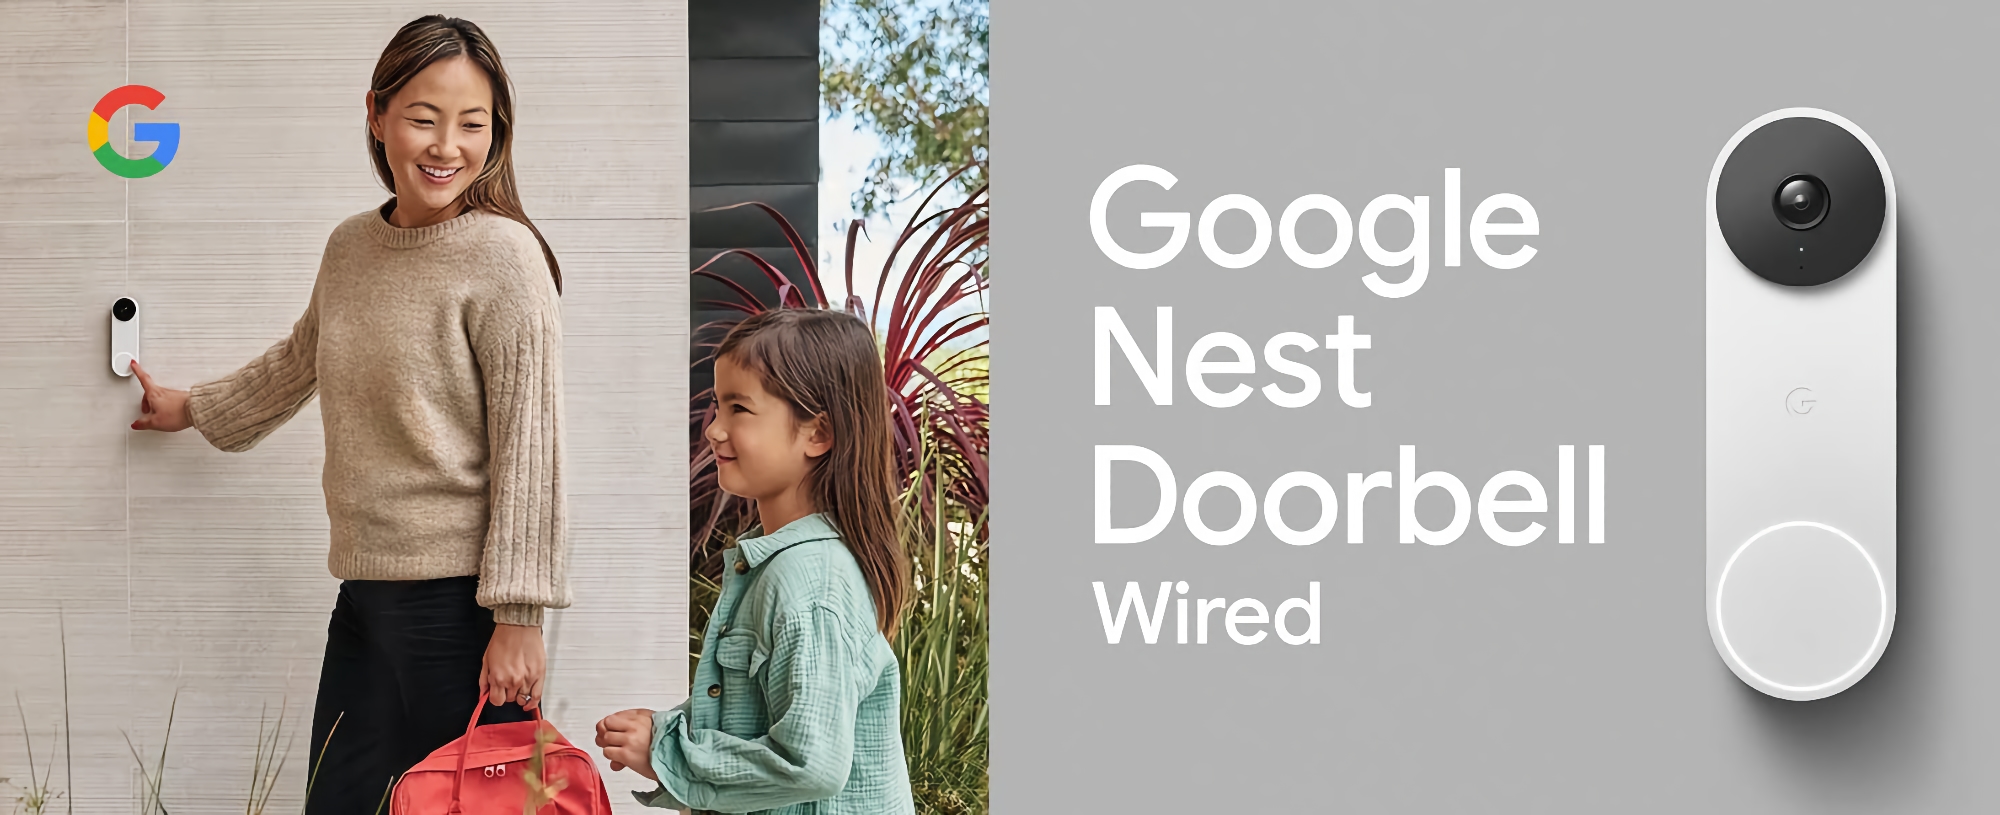 Google enthüllt neue kabelgebundene Nest Doorball mit HDR und 145-Grad-Blickwinkel für $ 179